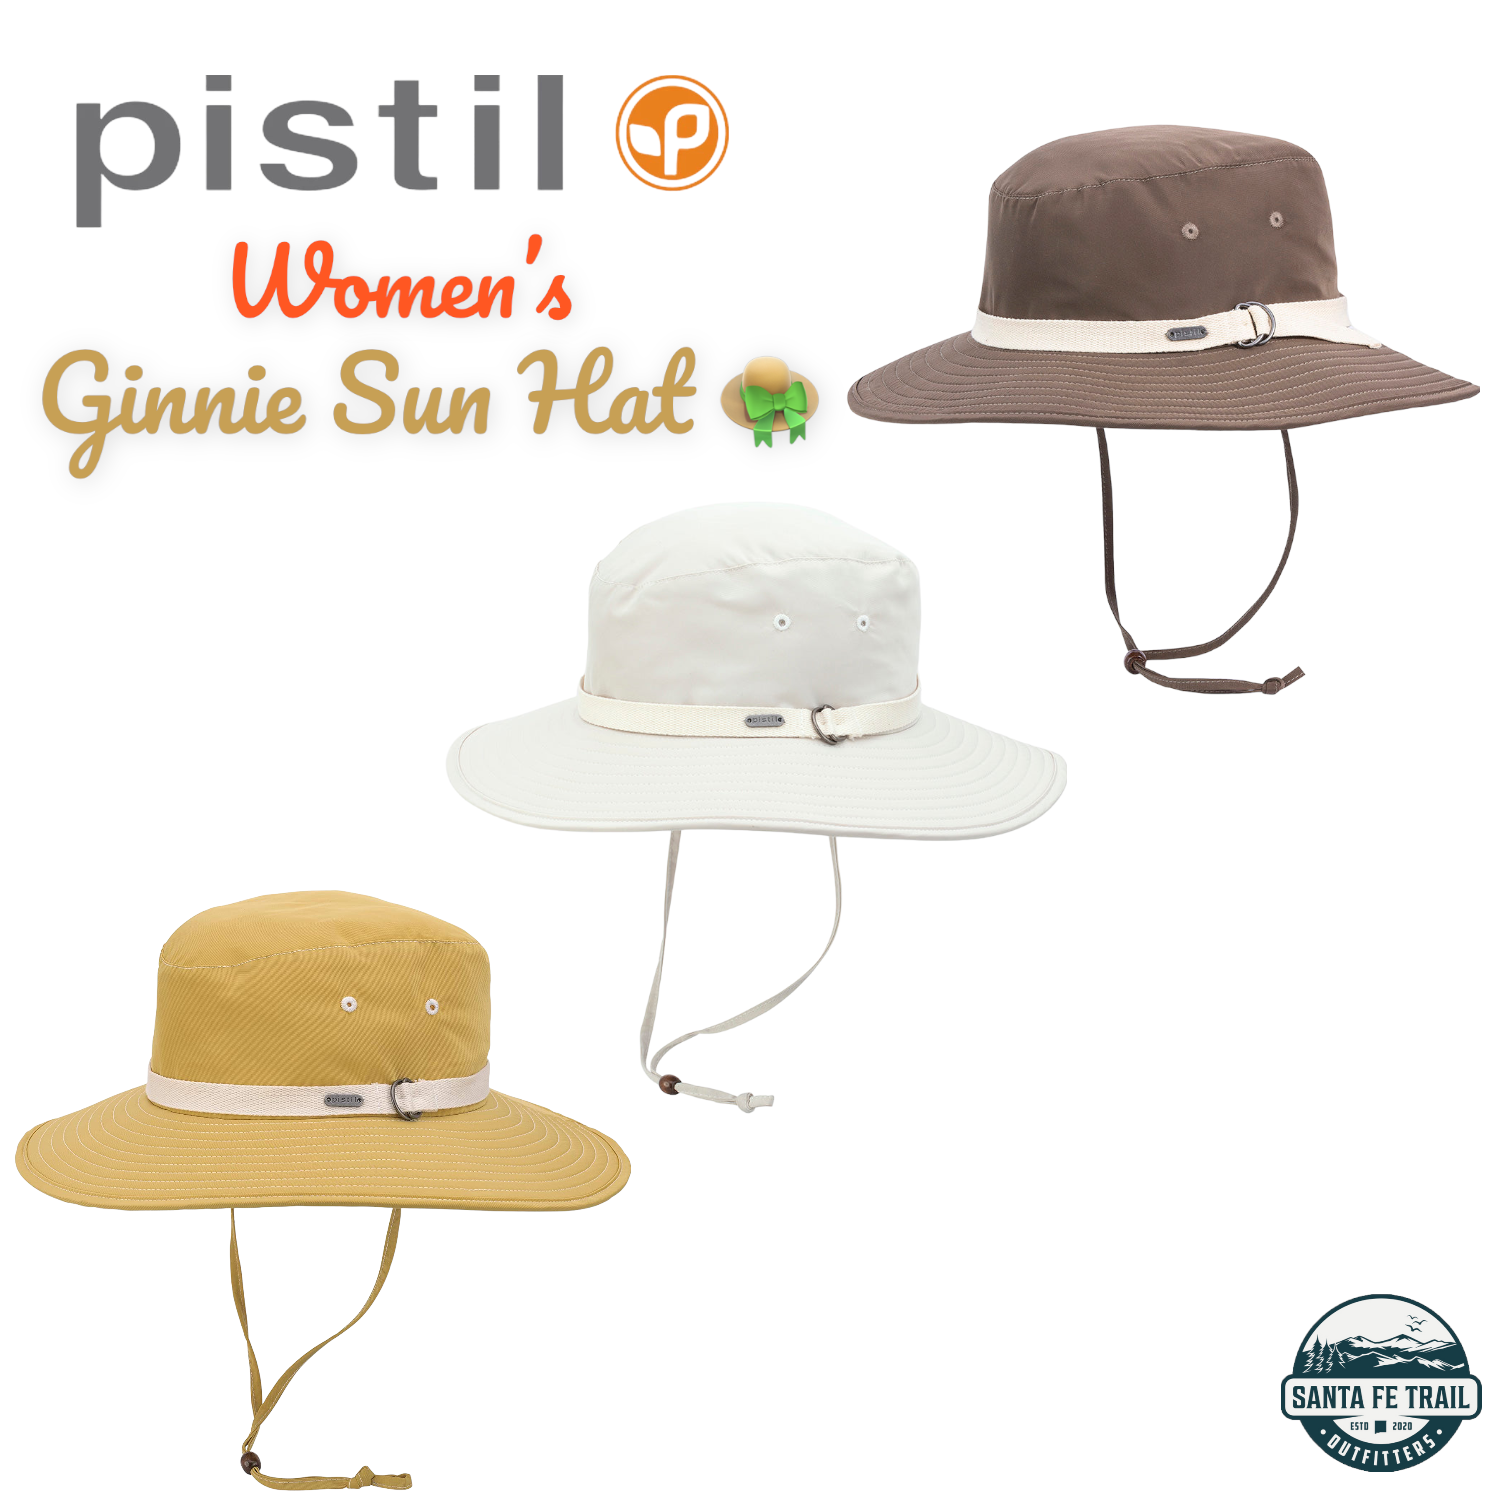 Ginnie Sun Hat by Pistil Designs